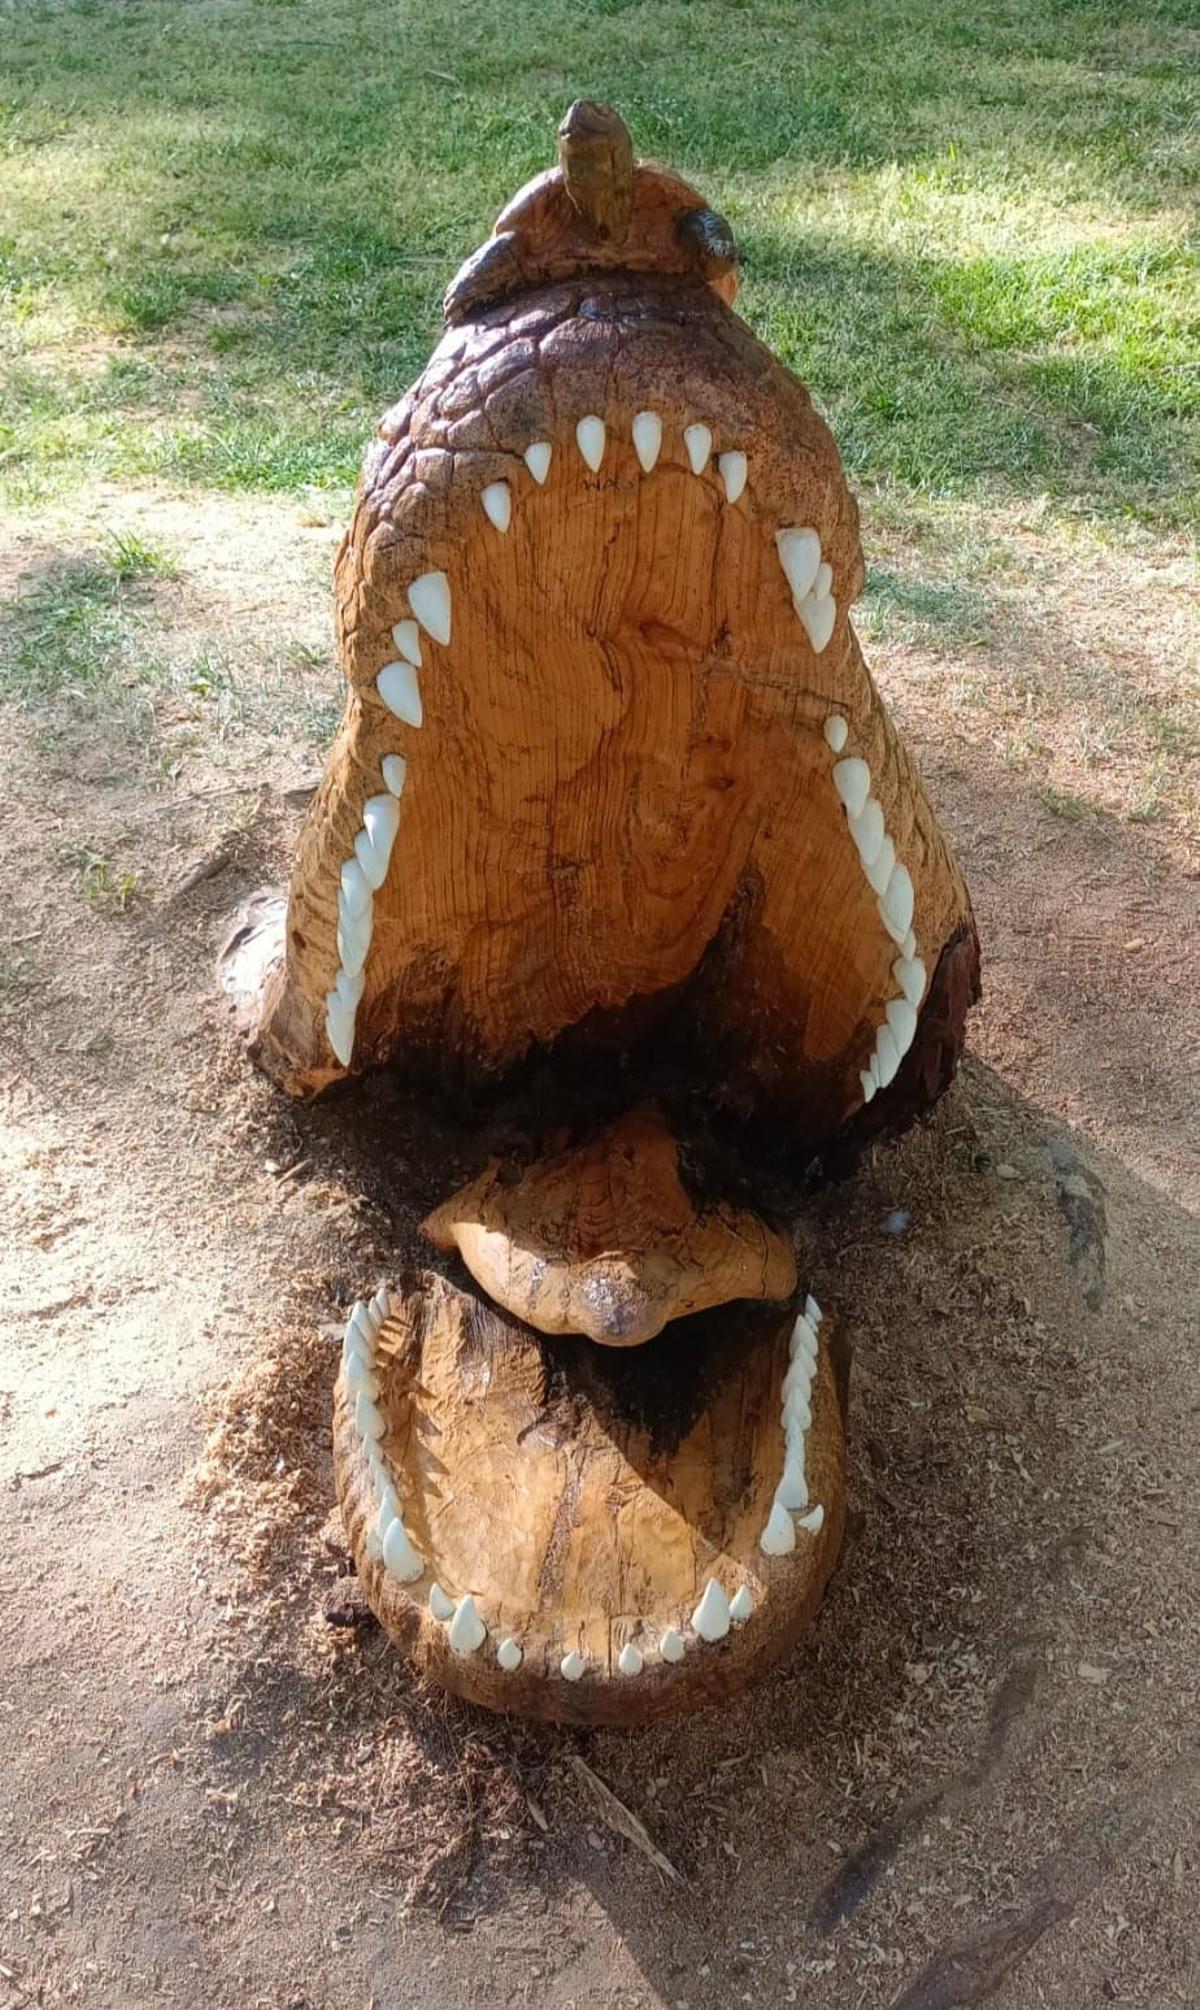 Vista frontal del cocodrilo.